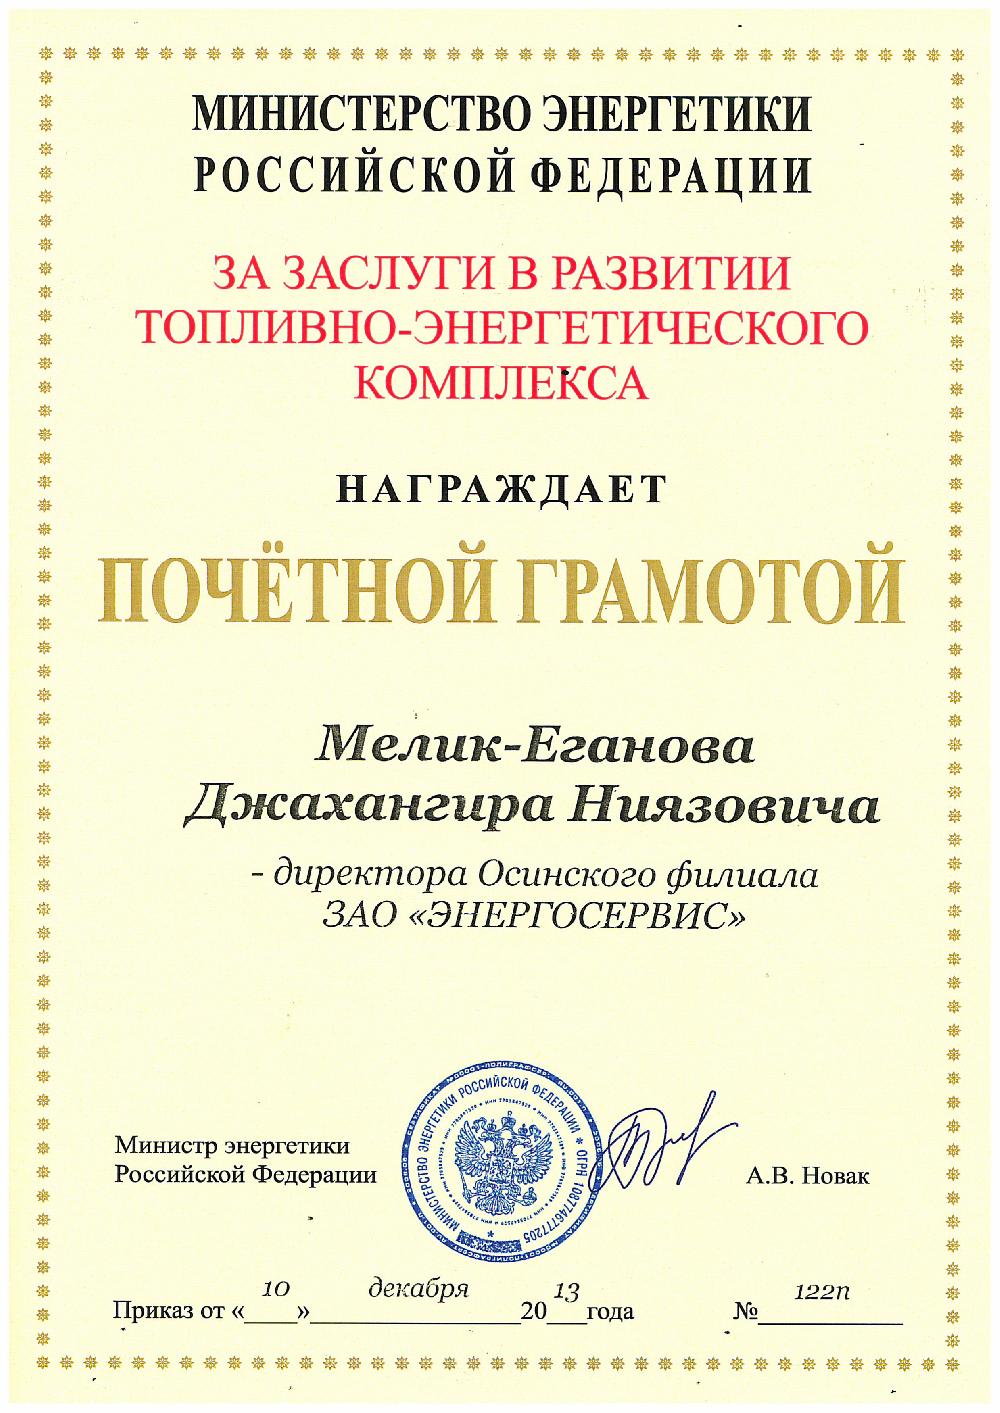 Мелик-Еганов Д.Н. награжден почетной грамотой Министерства энергетики.